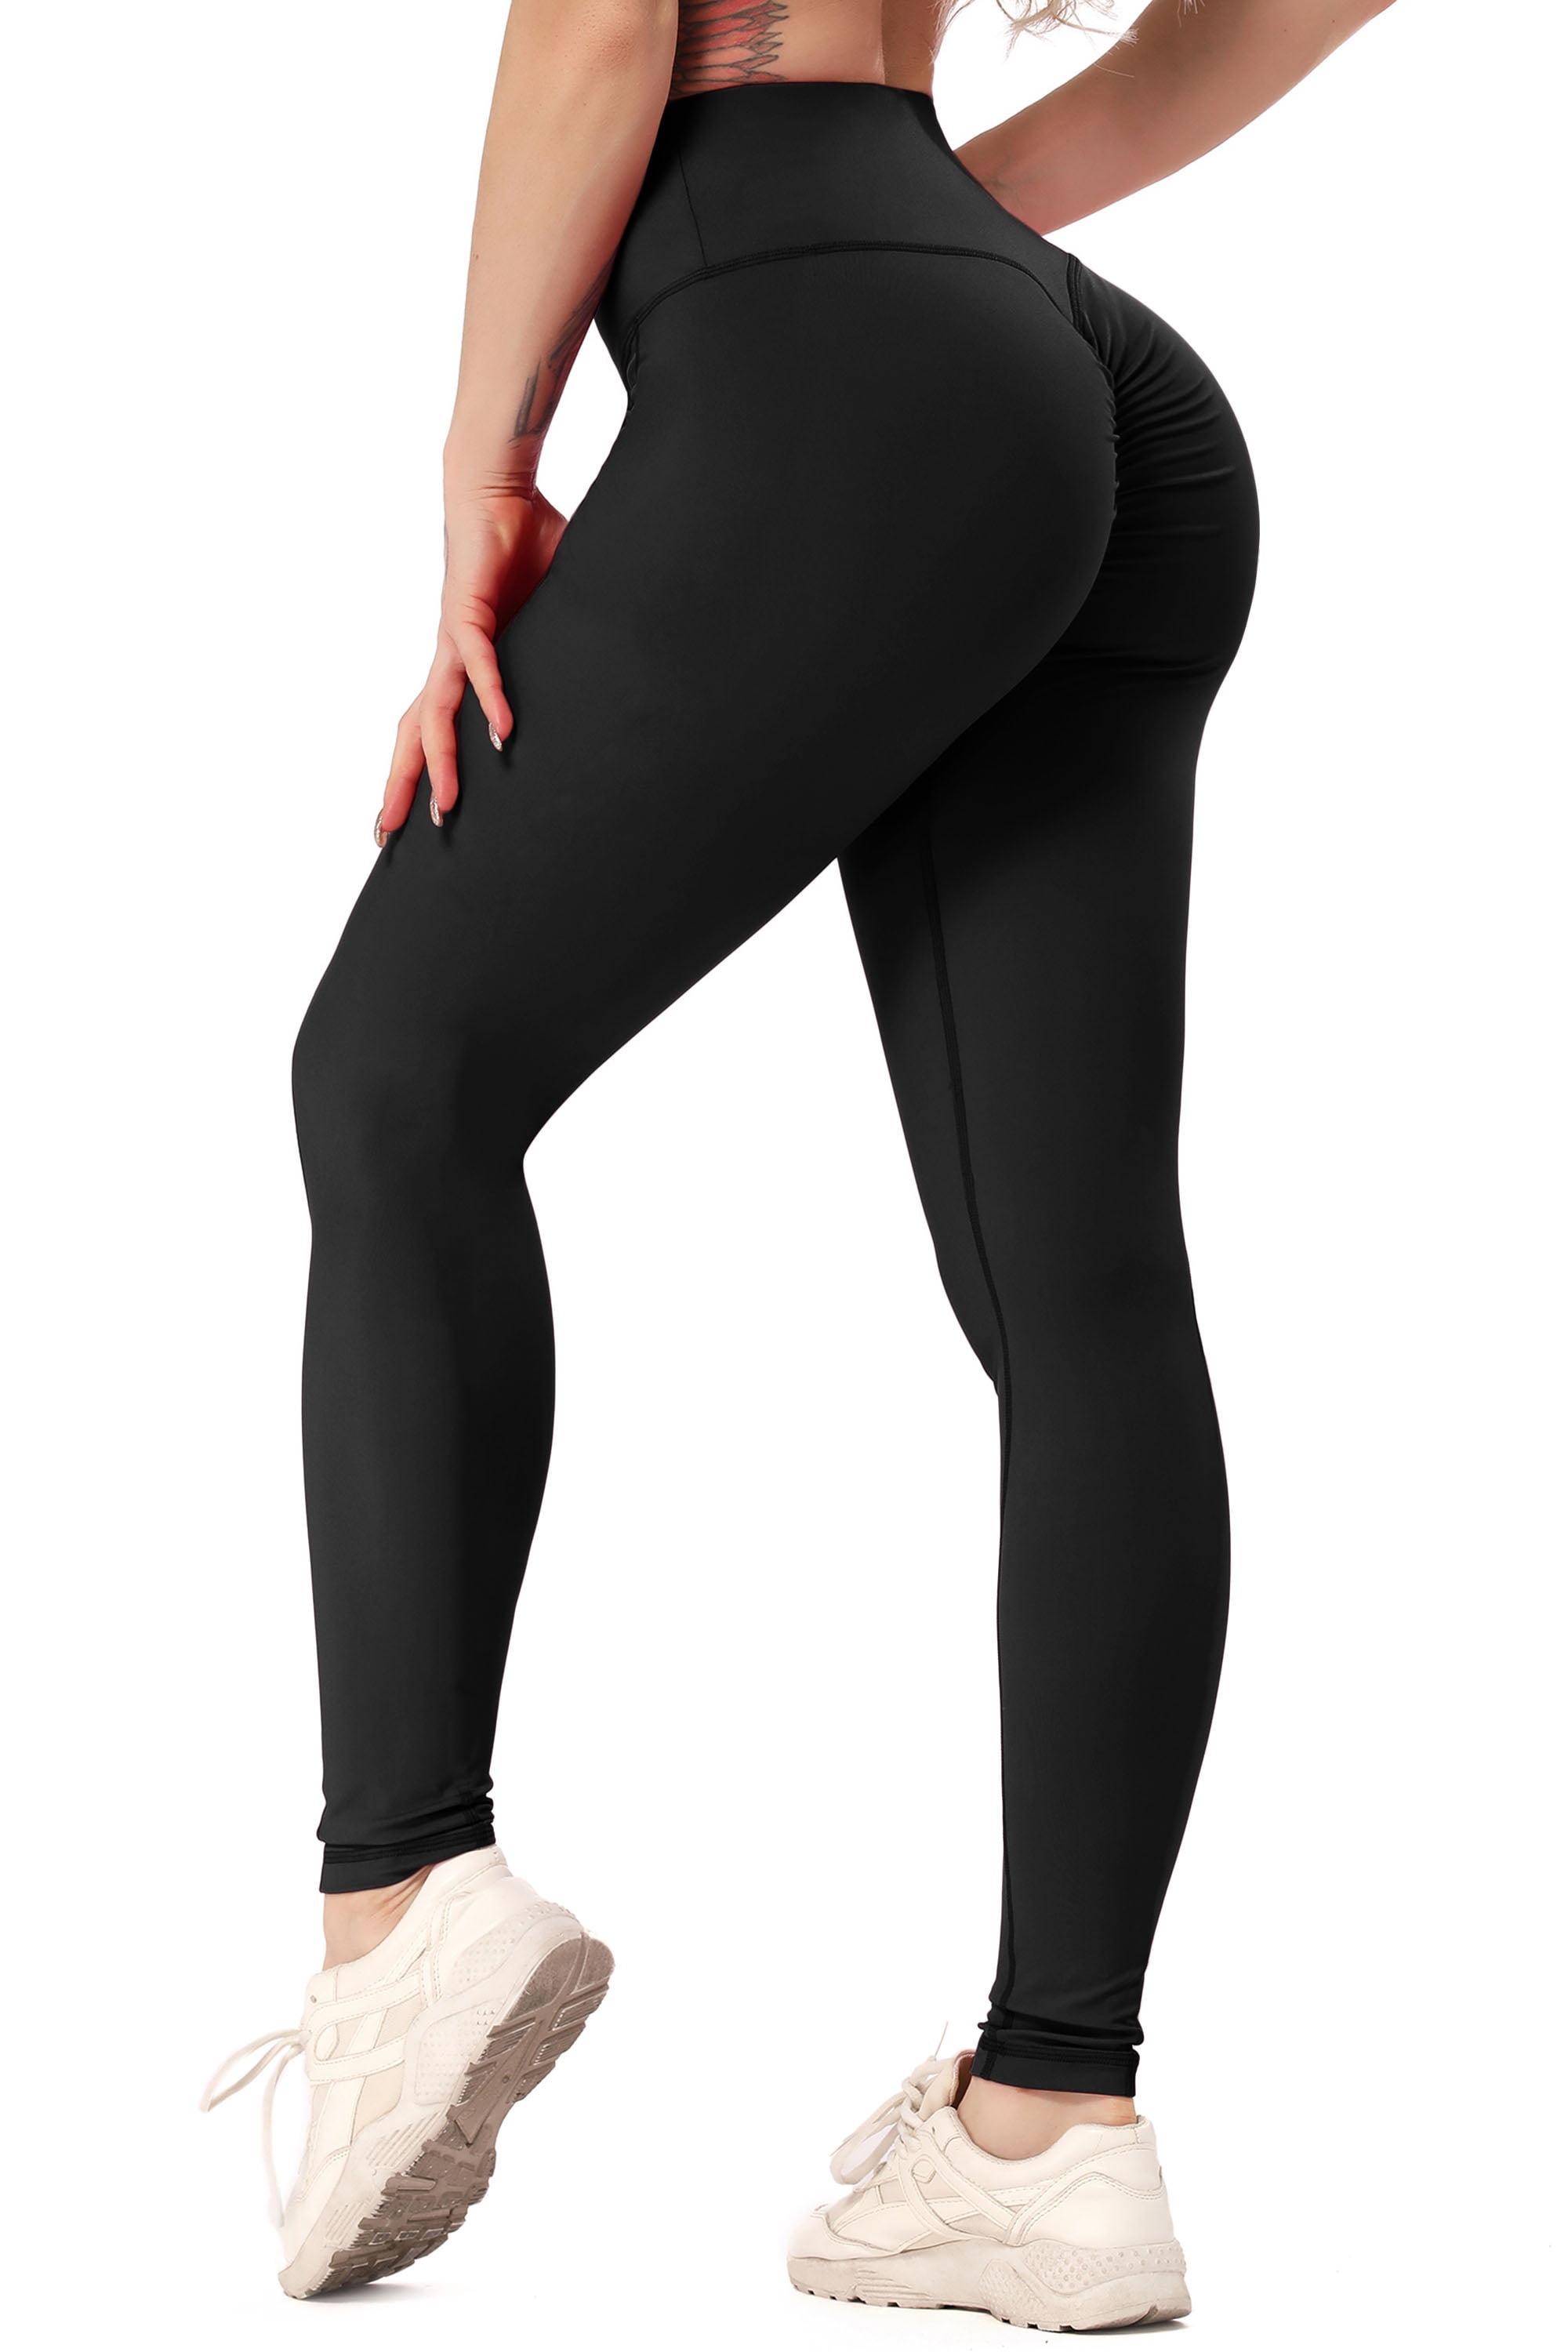 FITTOO Women Yoga Pants High Waist Scrunch Ruched Butt Lifting Workout Leggings Sport Fitness Gym Push Up - Walmart.com